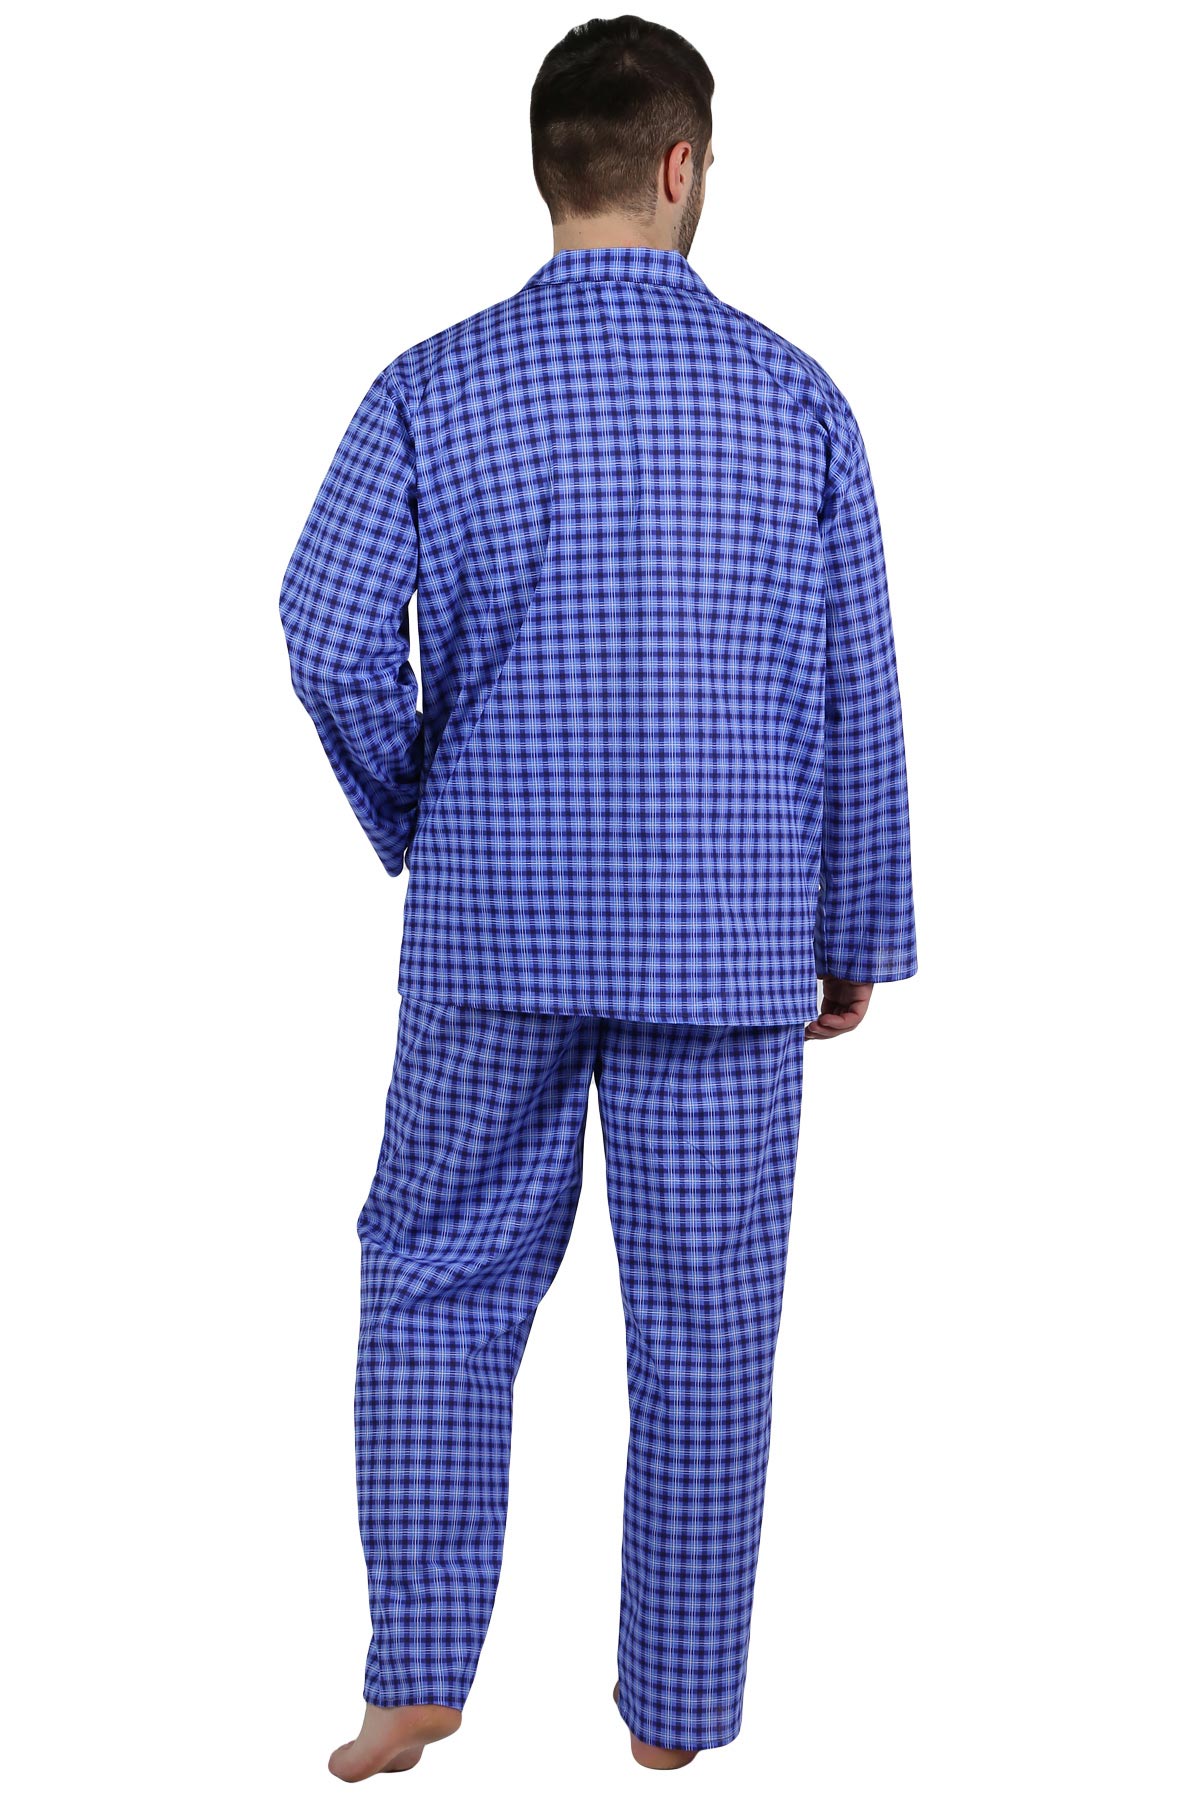 Муж. пижама арт. 22-0210 В ассортименте р. 54 Оптима трикотаж, размер 54 - фото 3